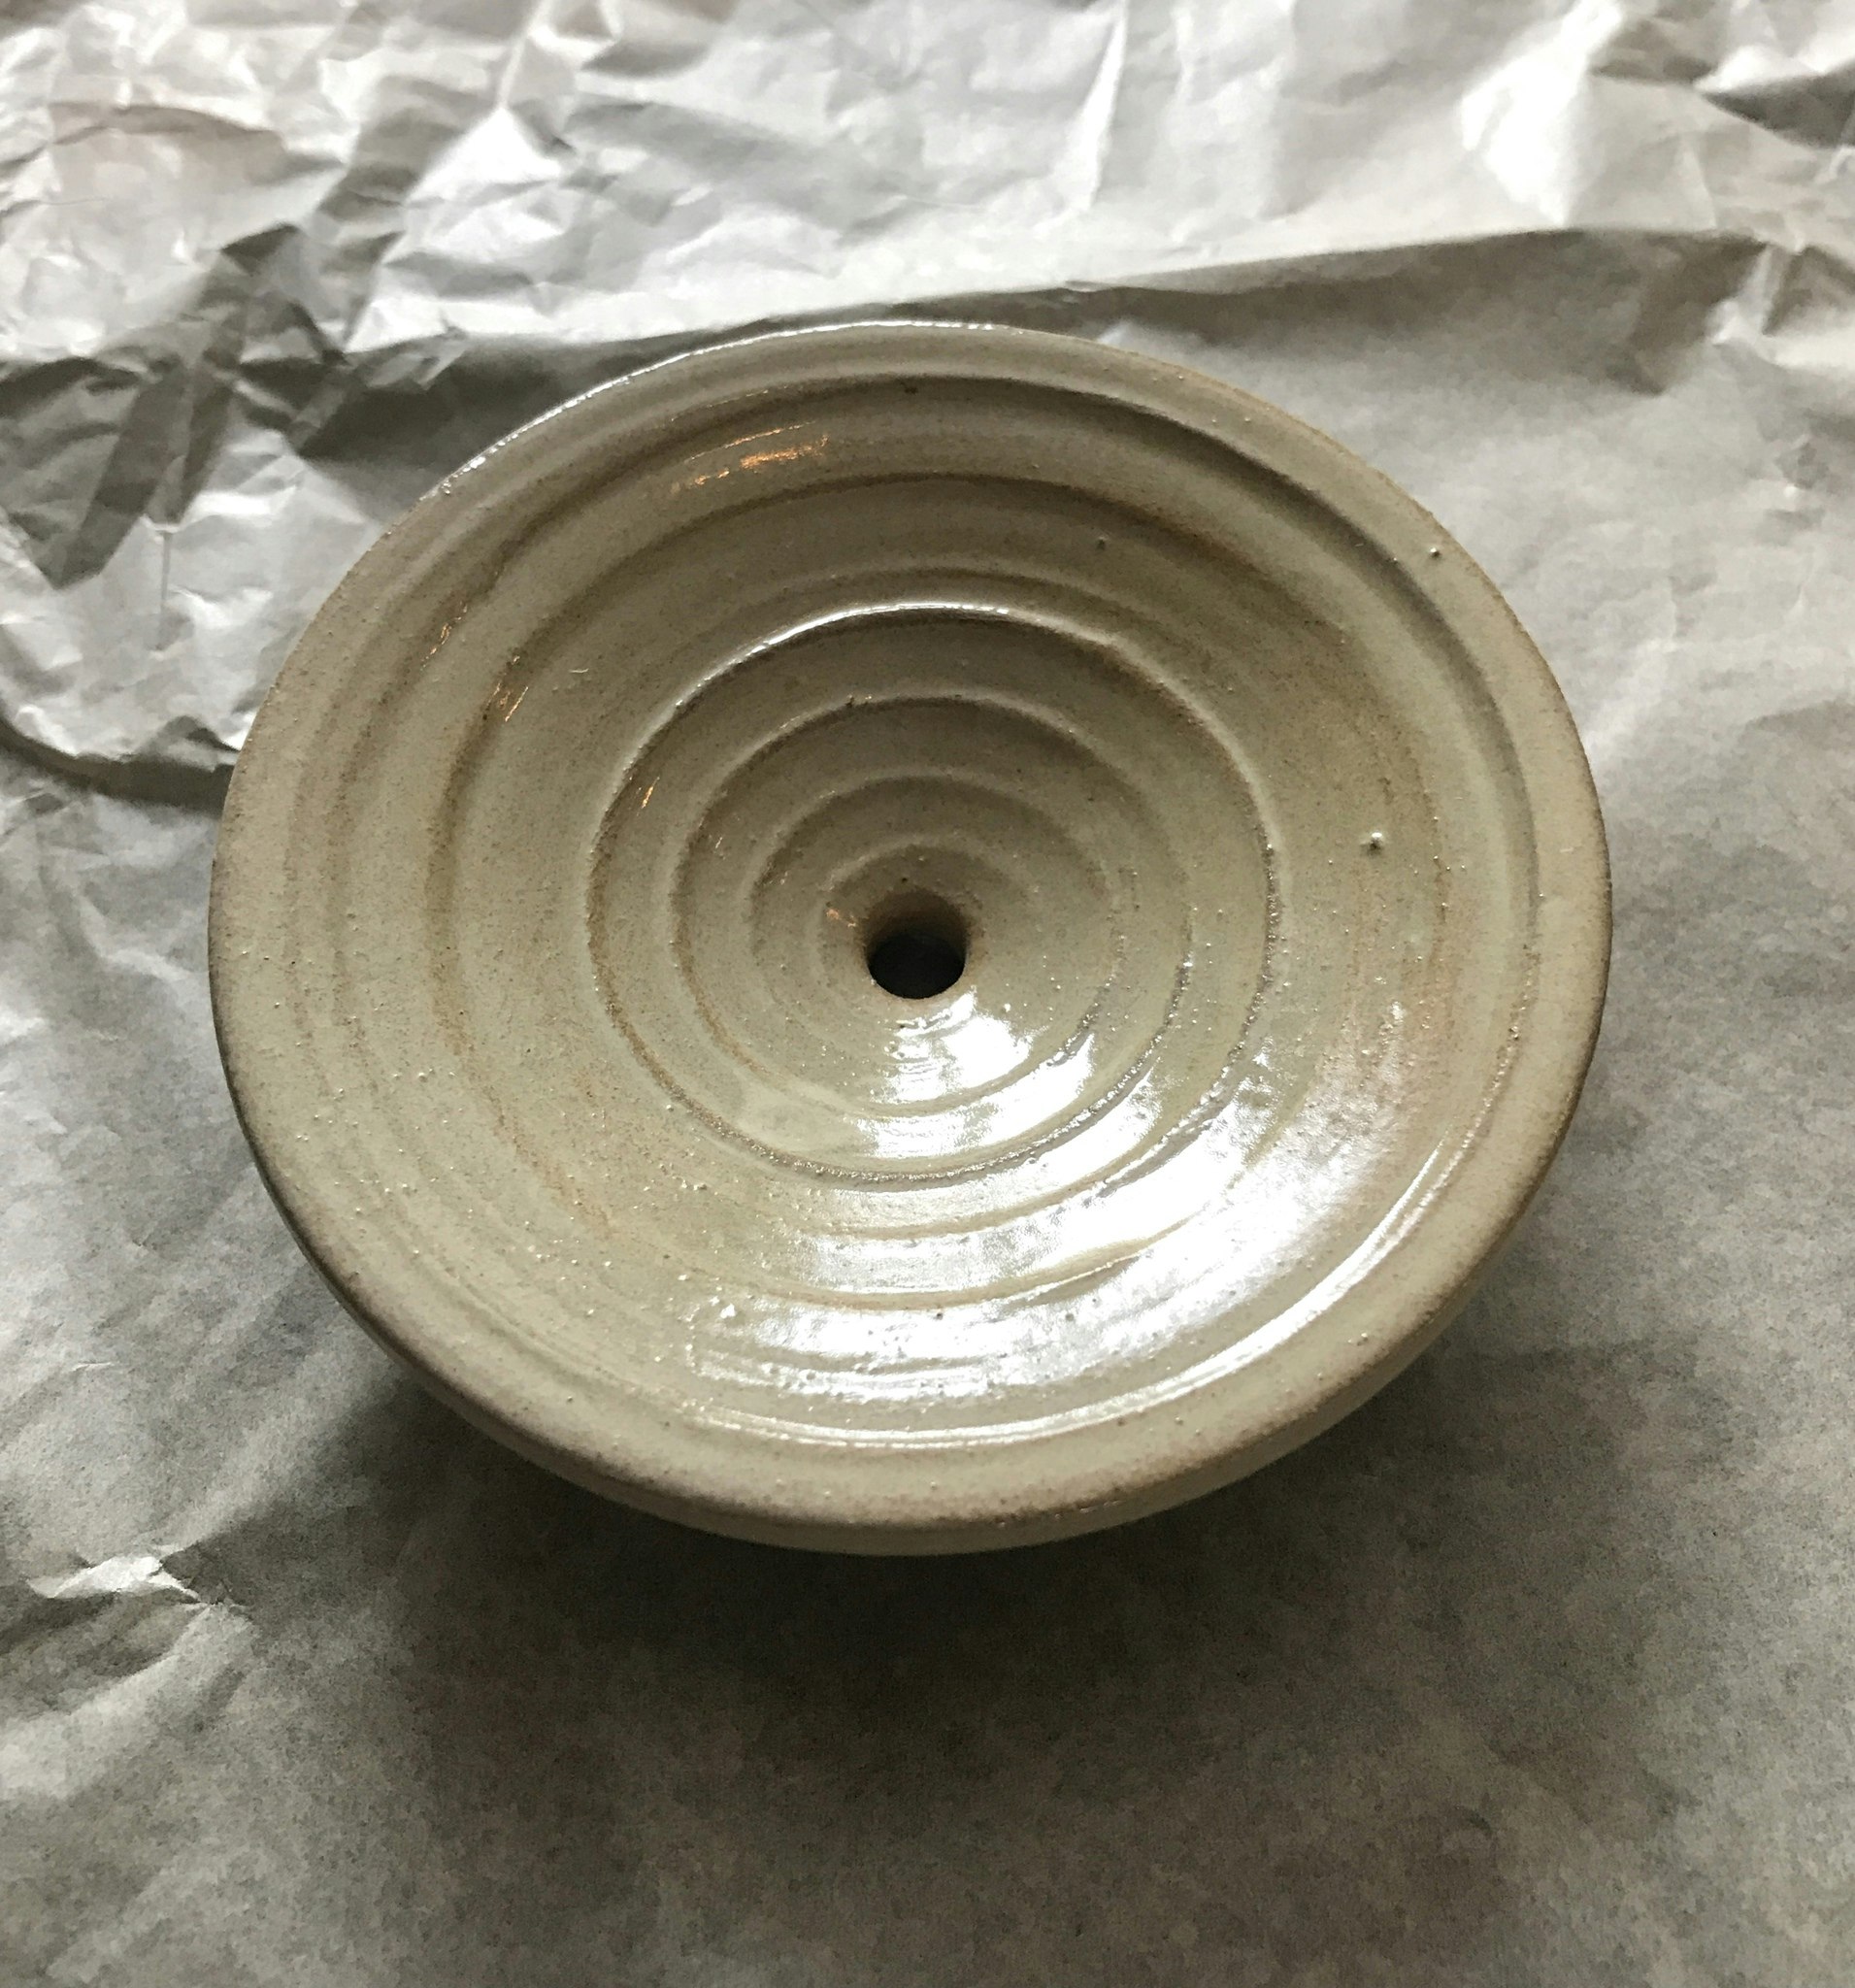 Tvålfat i keramik av Linda Ullvan